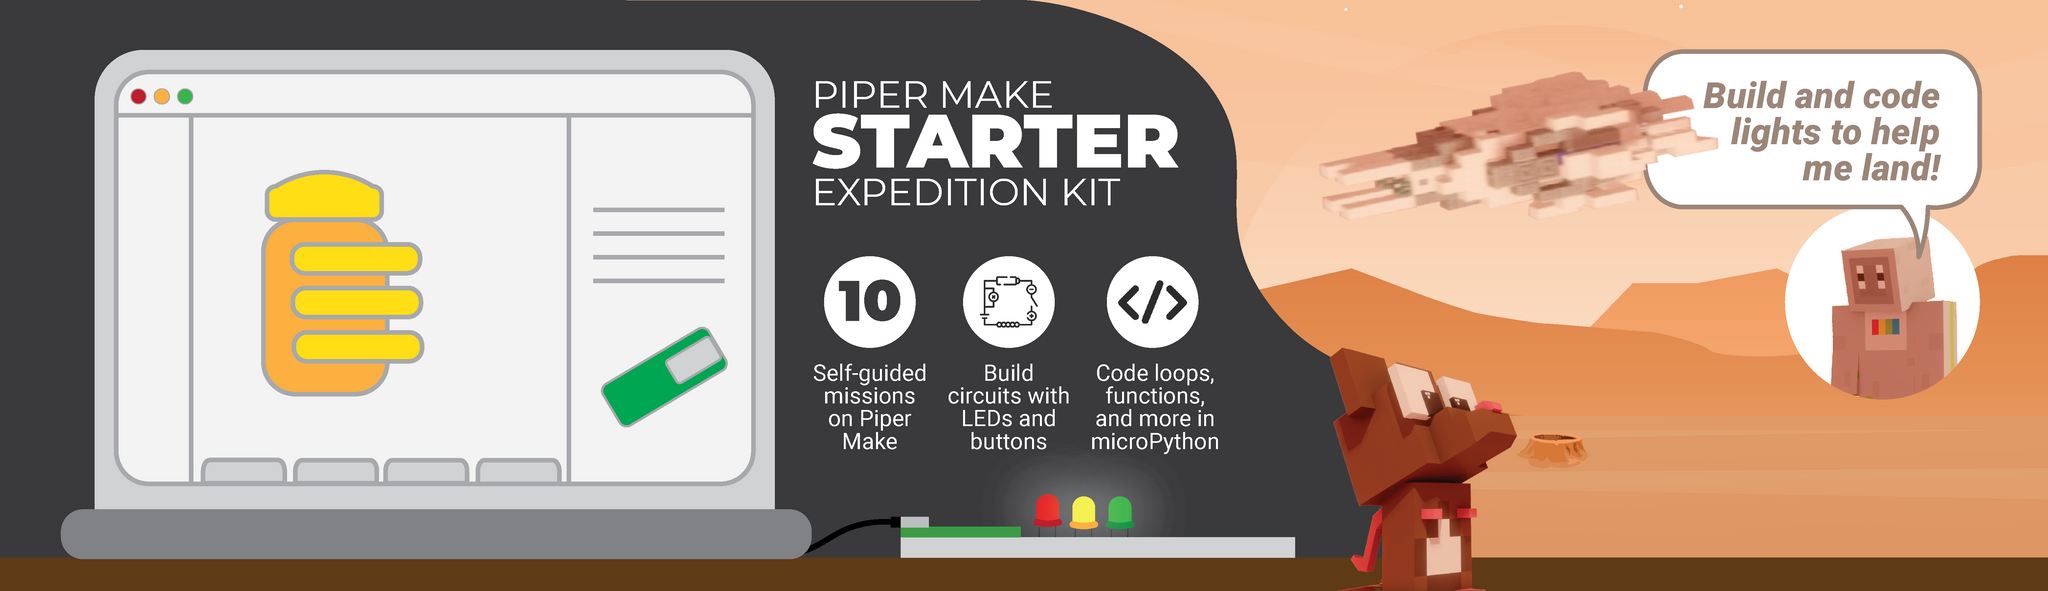 Piper Make Starter Kit